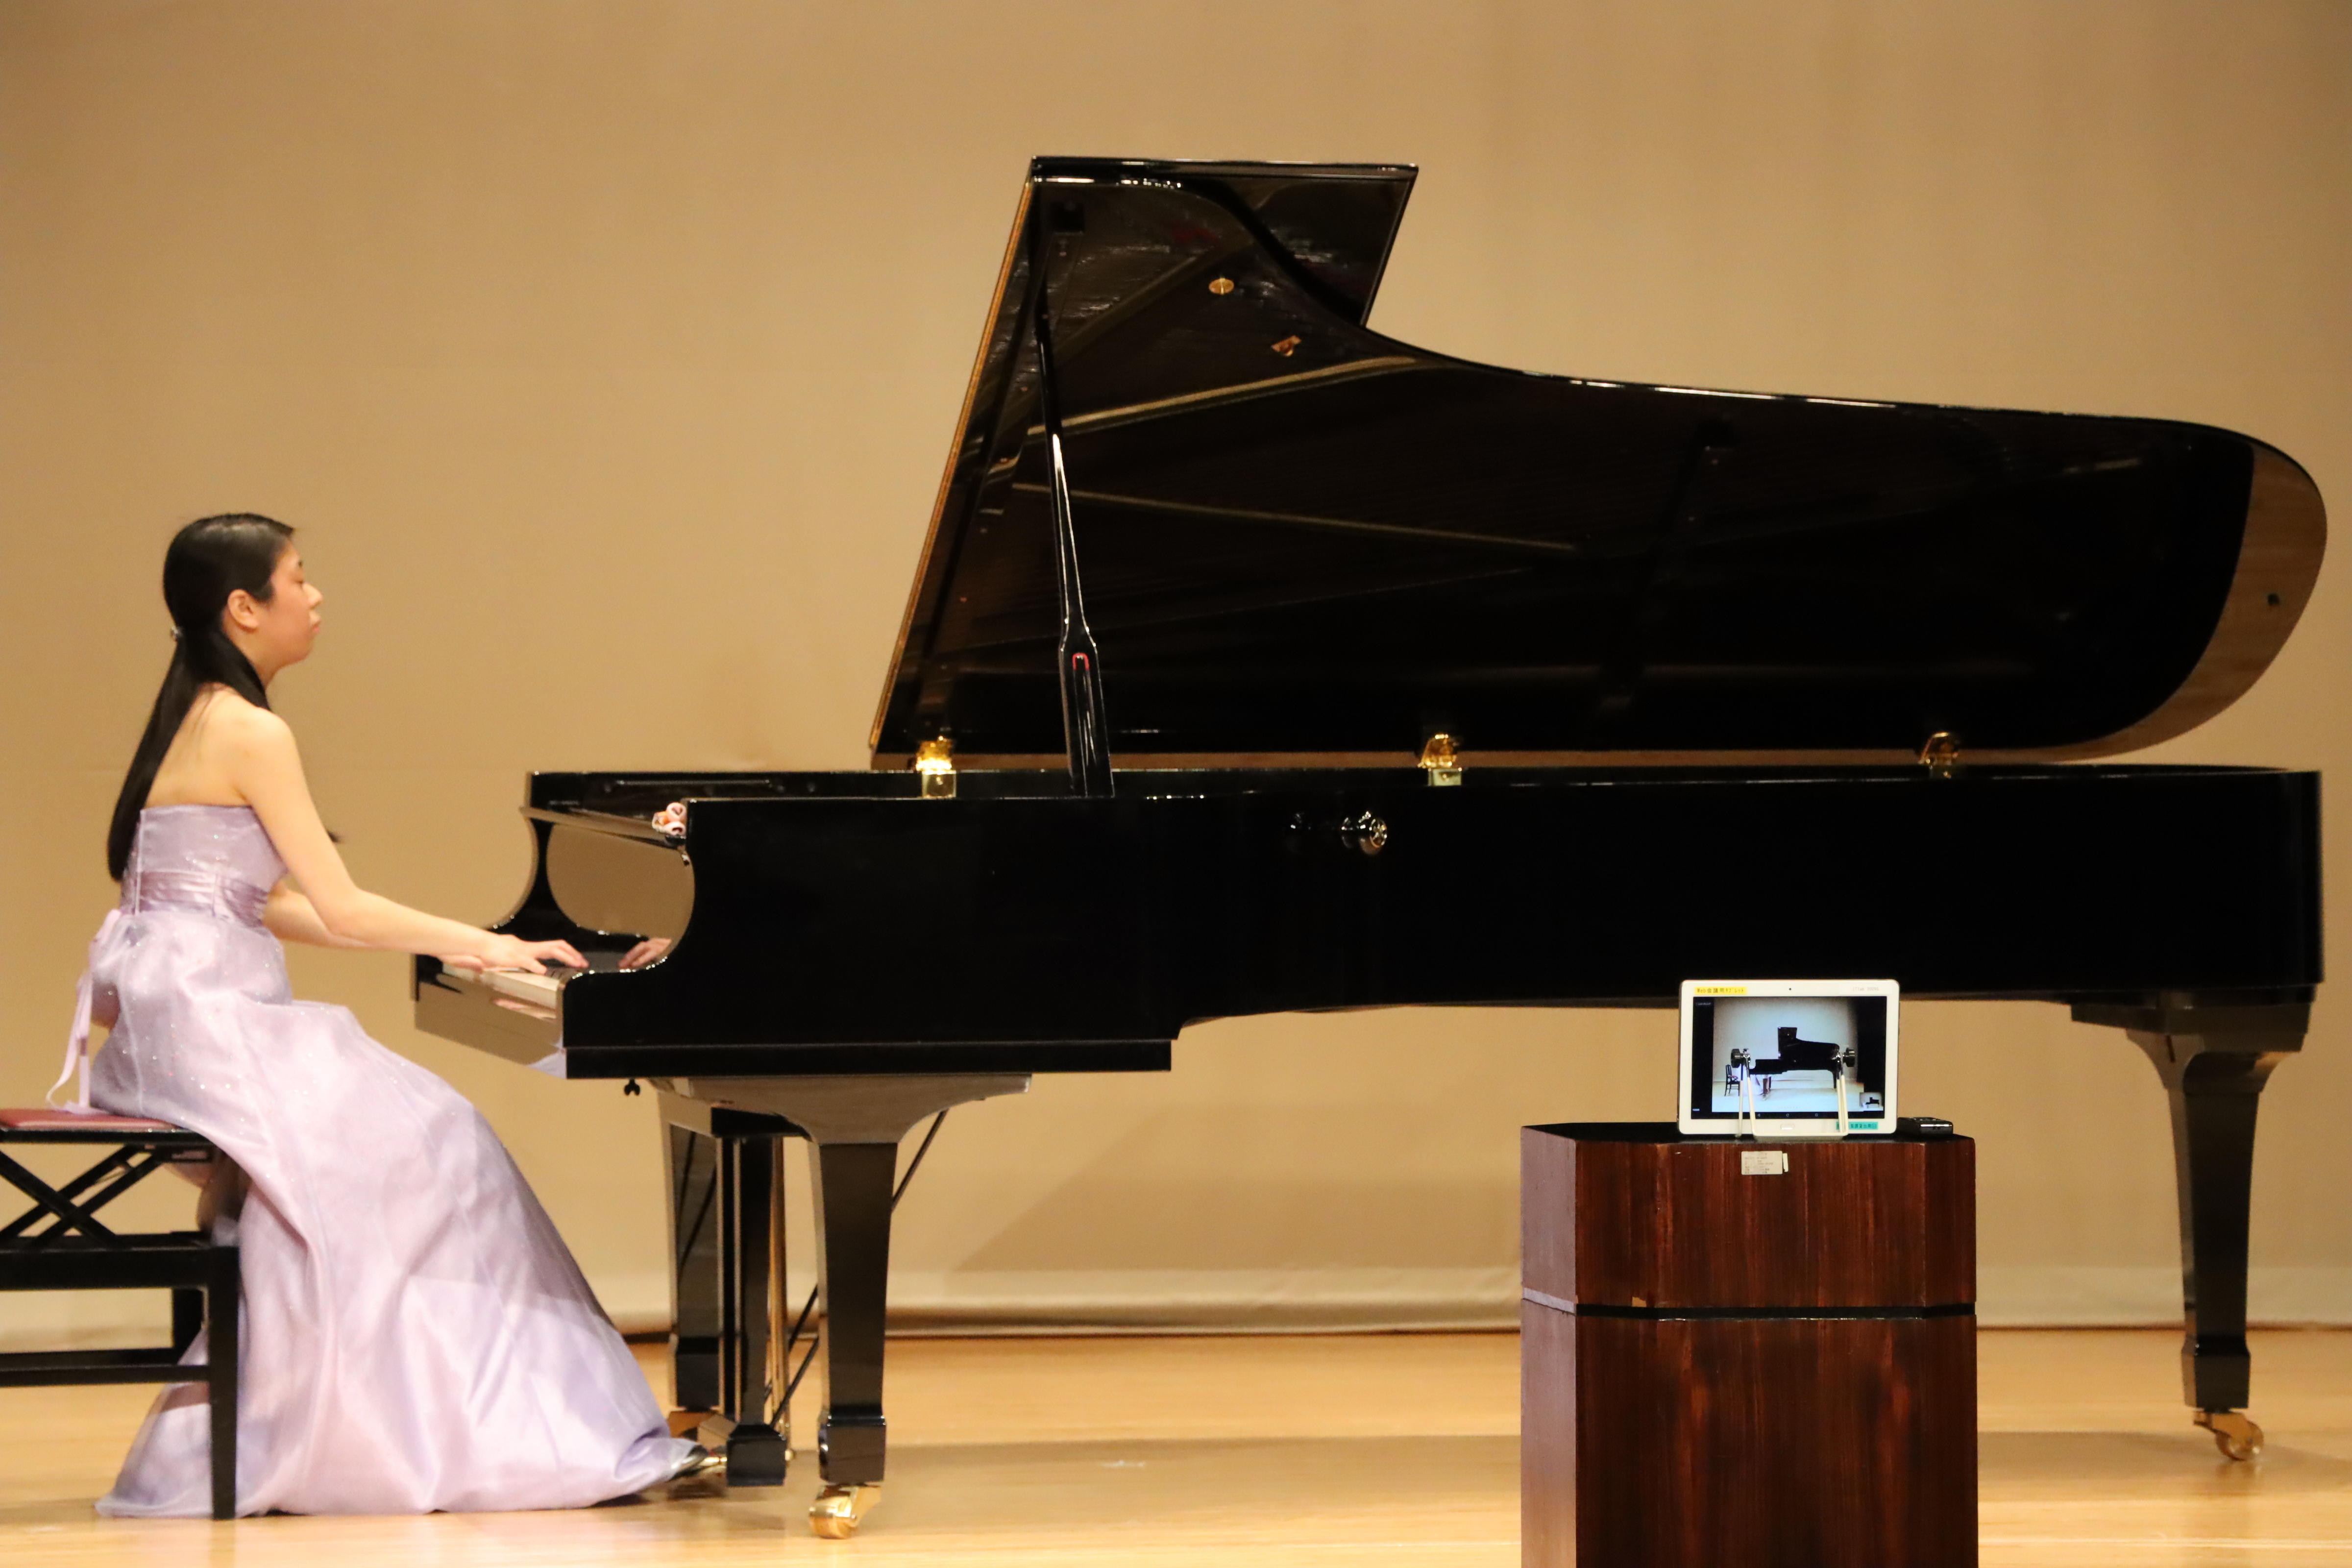 聖徳大学音楽学部の学生が松戸市主催「認知症の人向け癒やしの音楽会」でピアノを演奏 -- オンラインで安らぎのひとときを提供